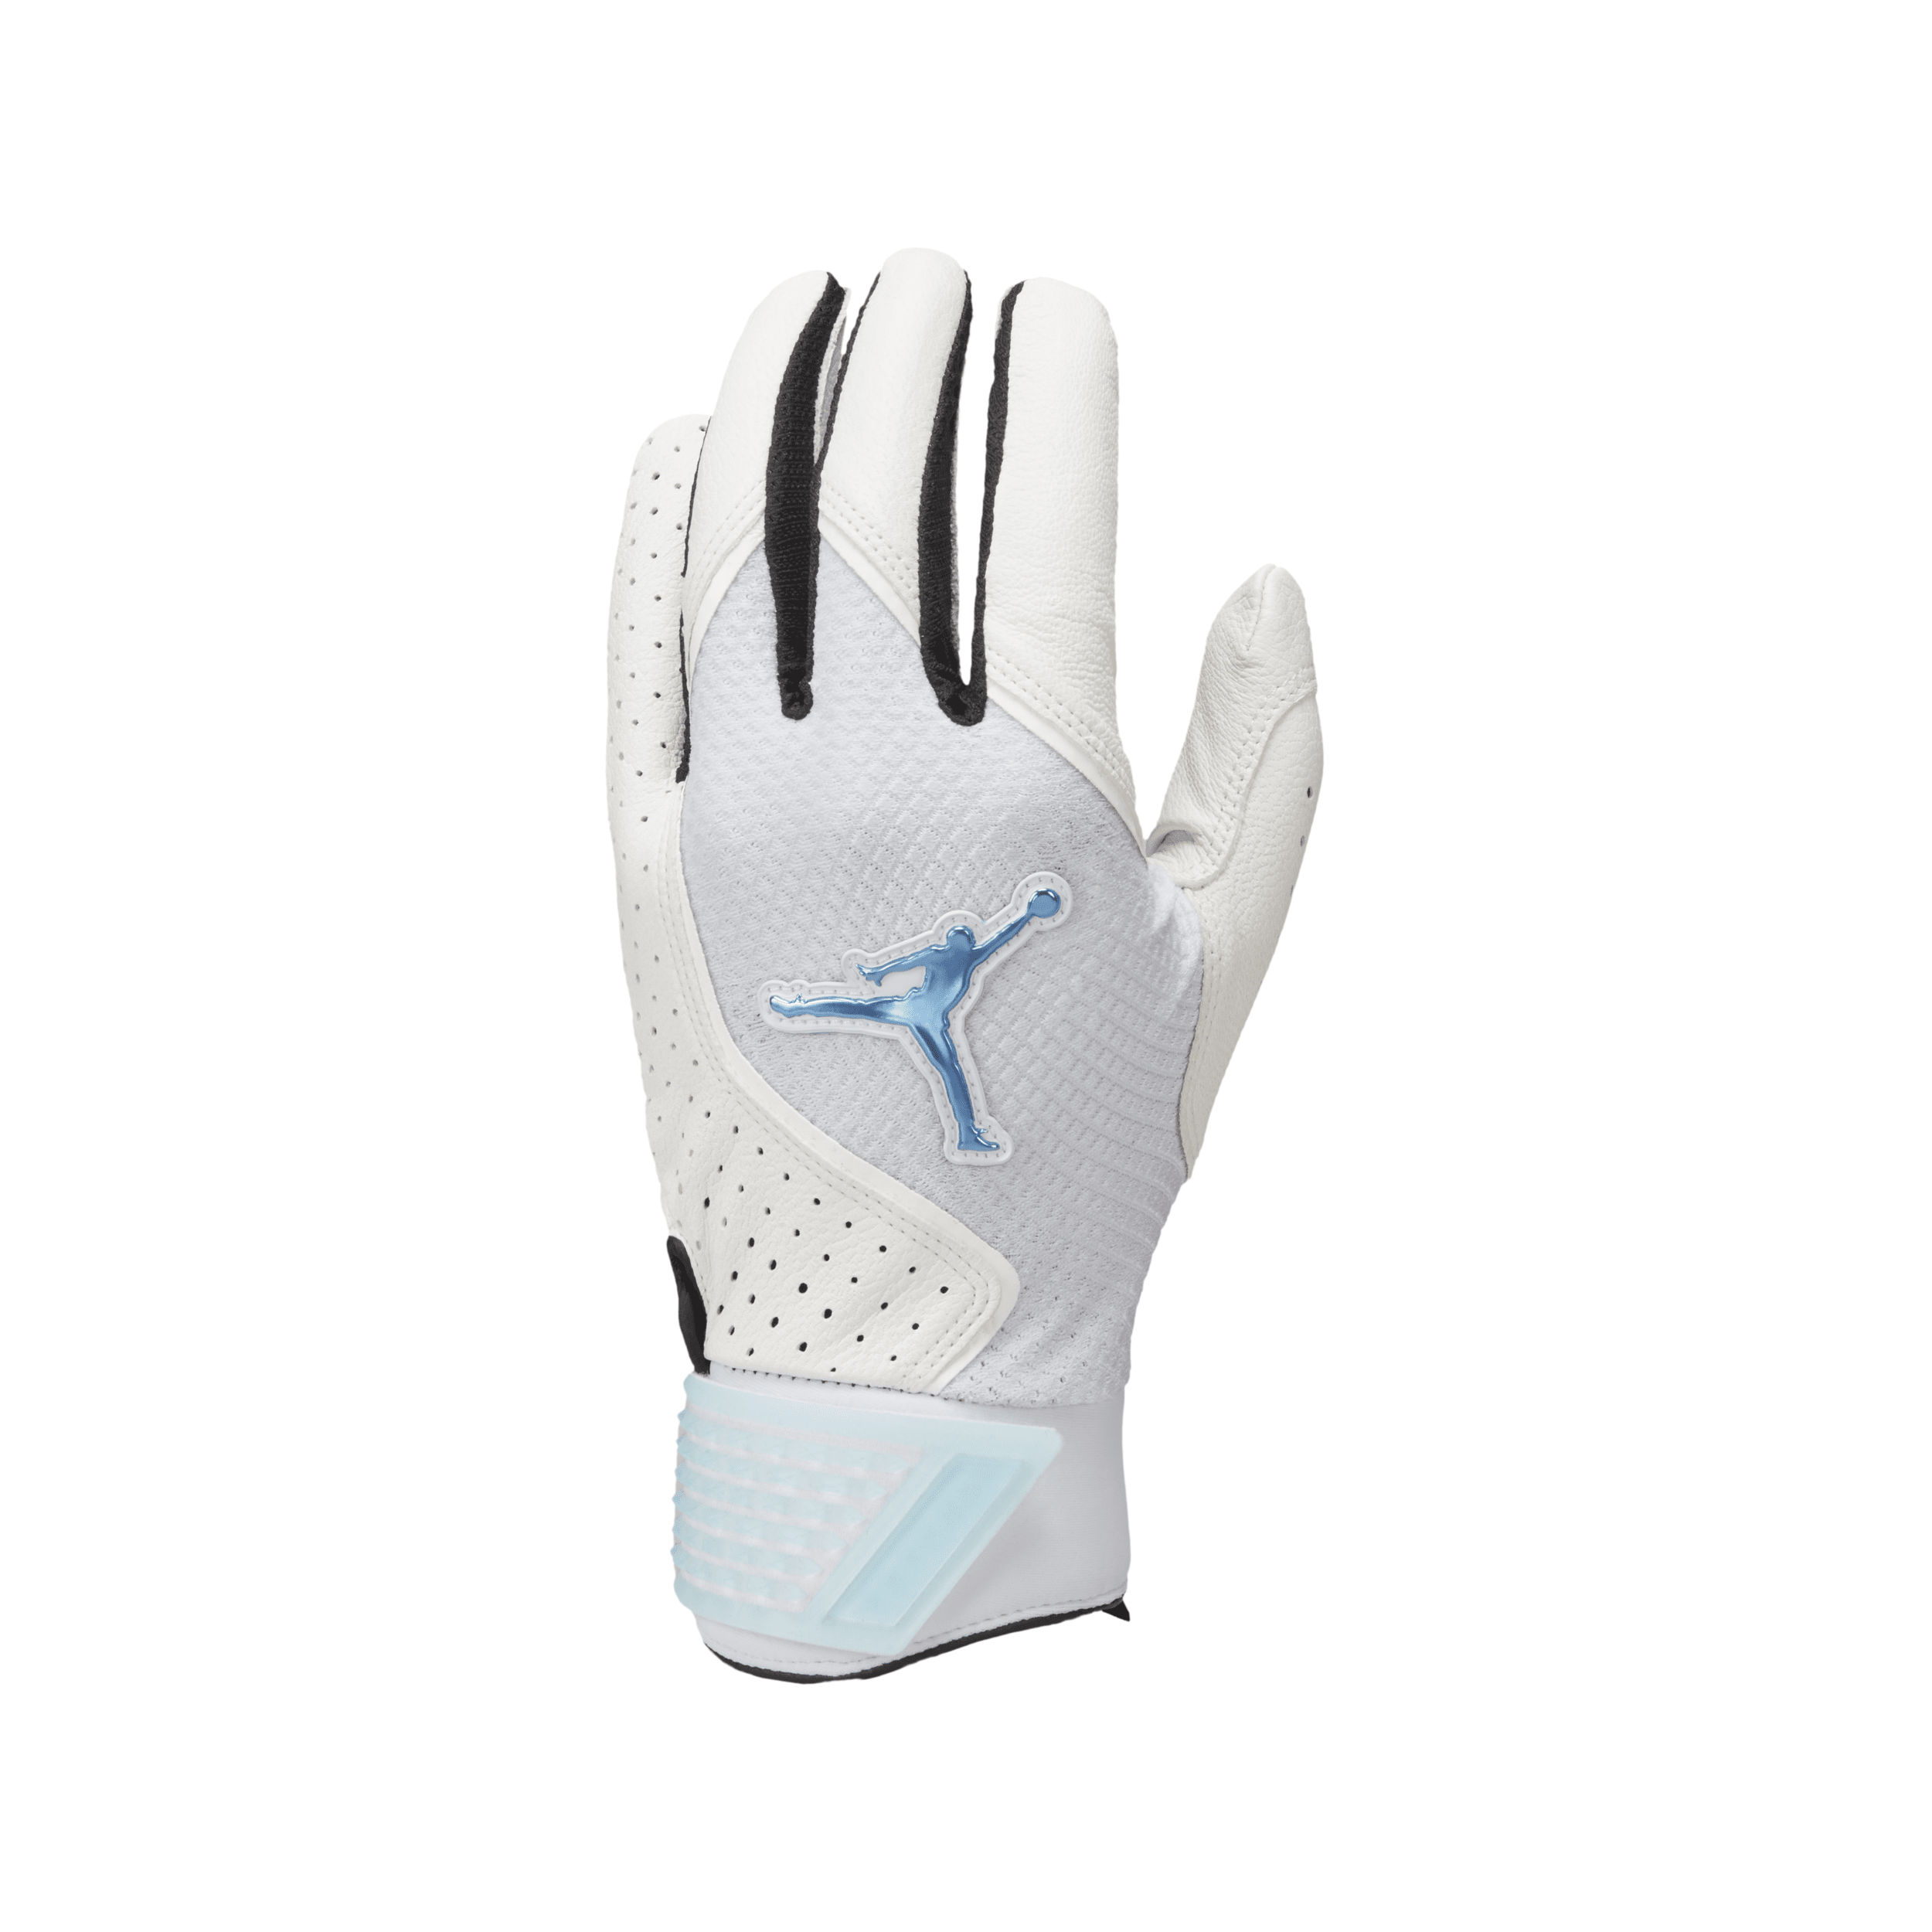 Jordan Fly Select Baseball Gloves In White